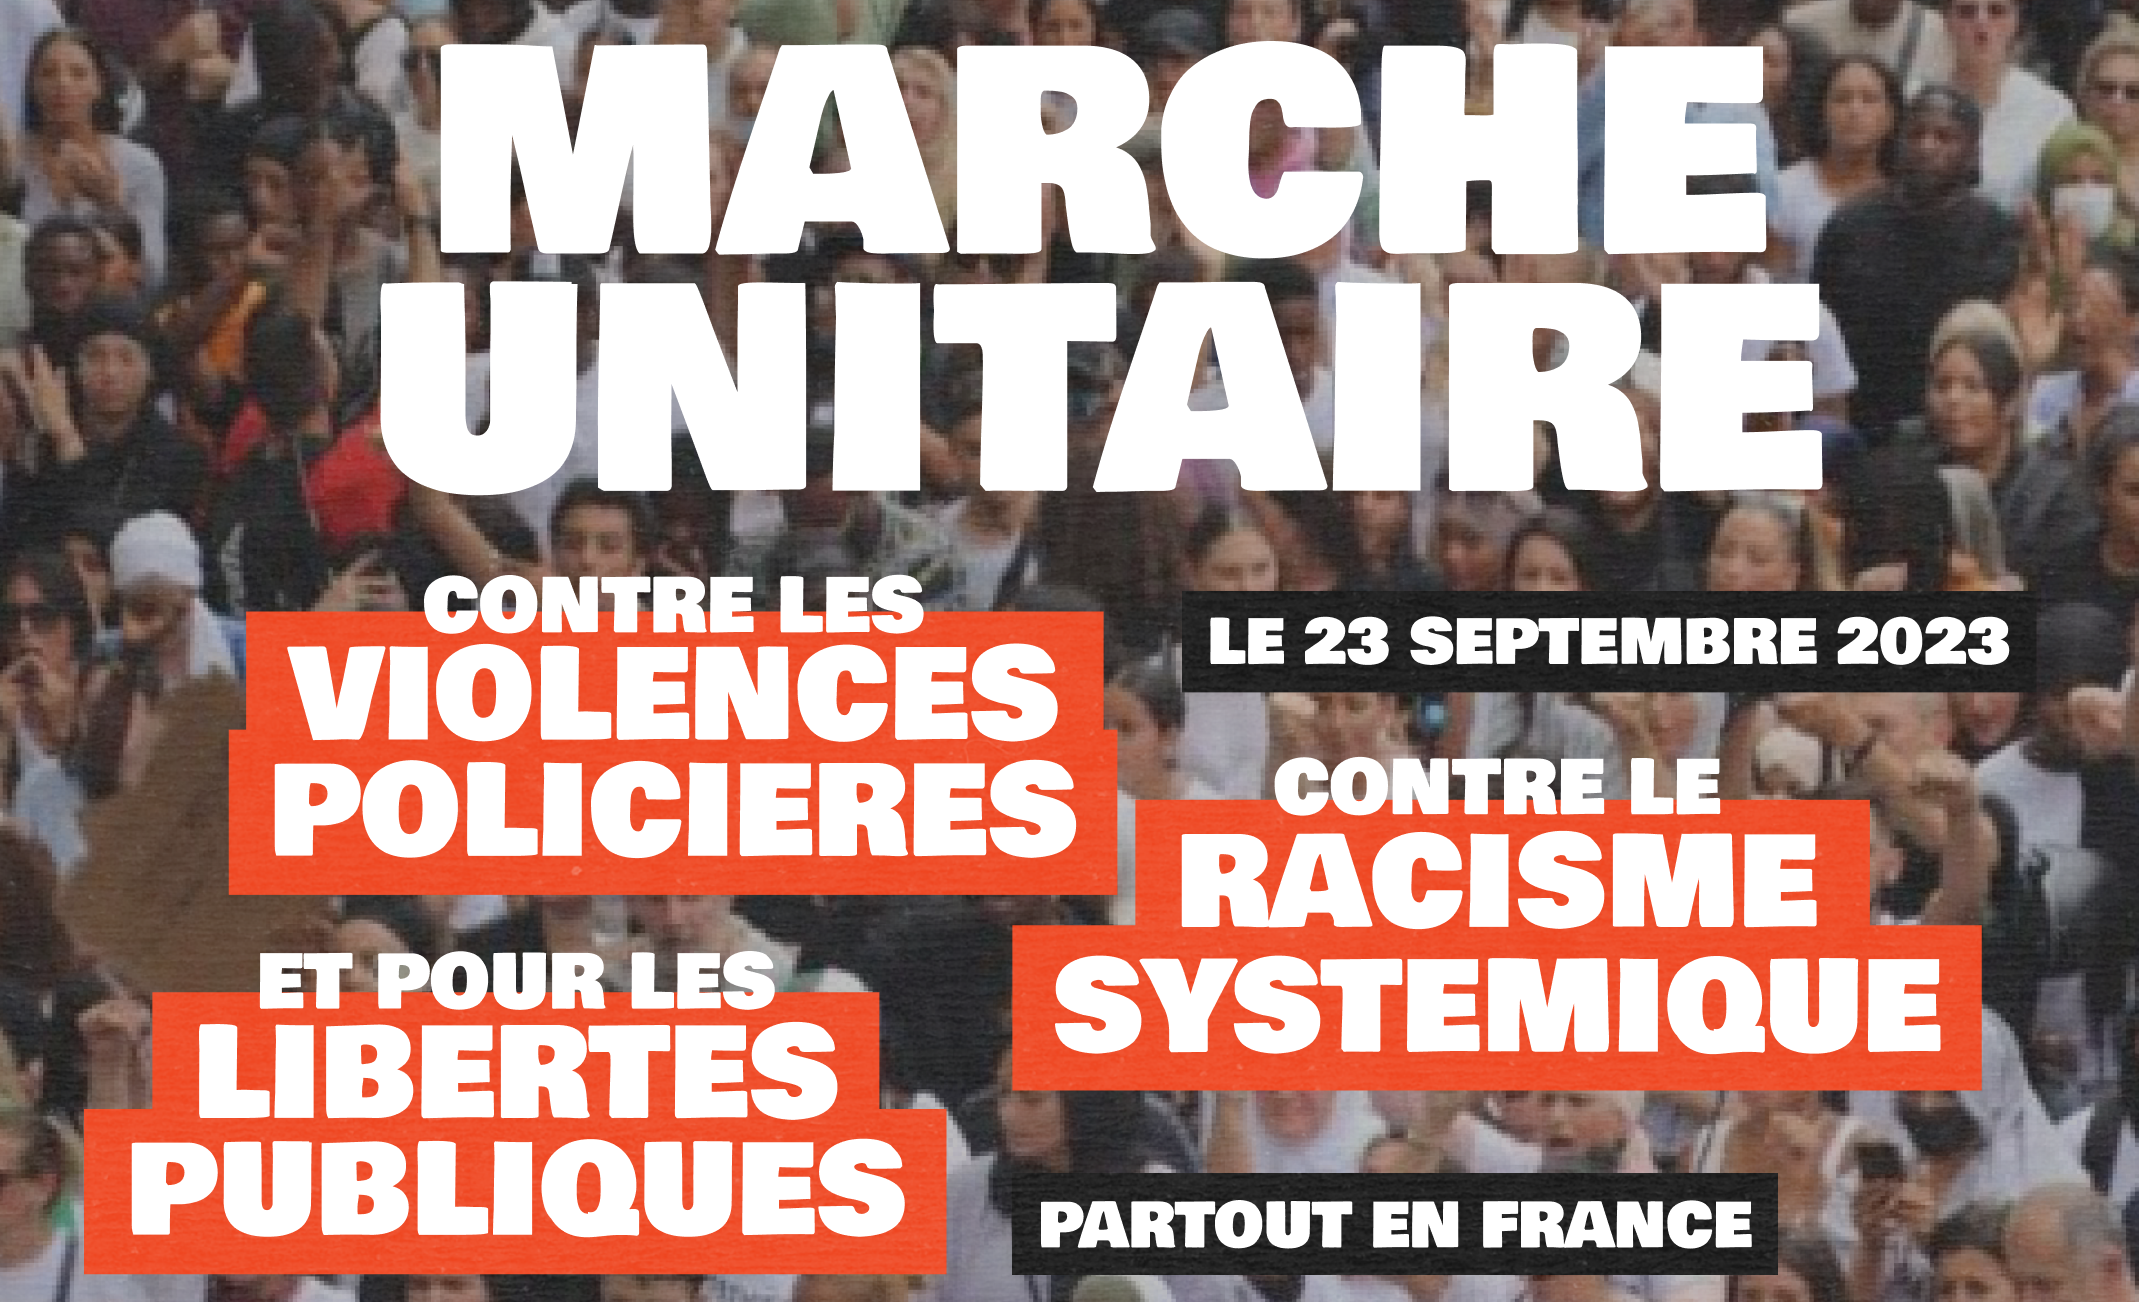 Le 23 septembre, dans toute la France, nous marchons uni·es contre les violences policières, le racisme systémique et pour les libertés publiques.